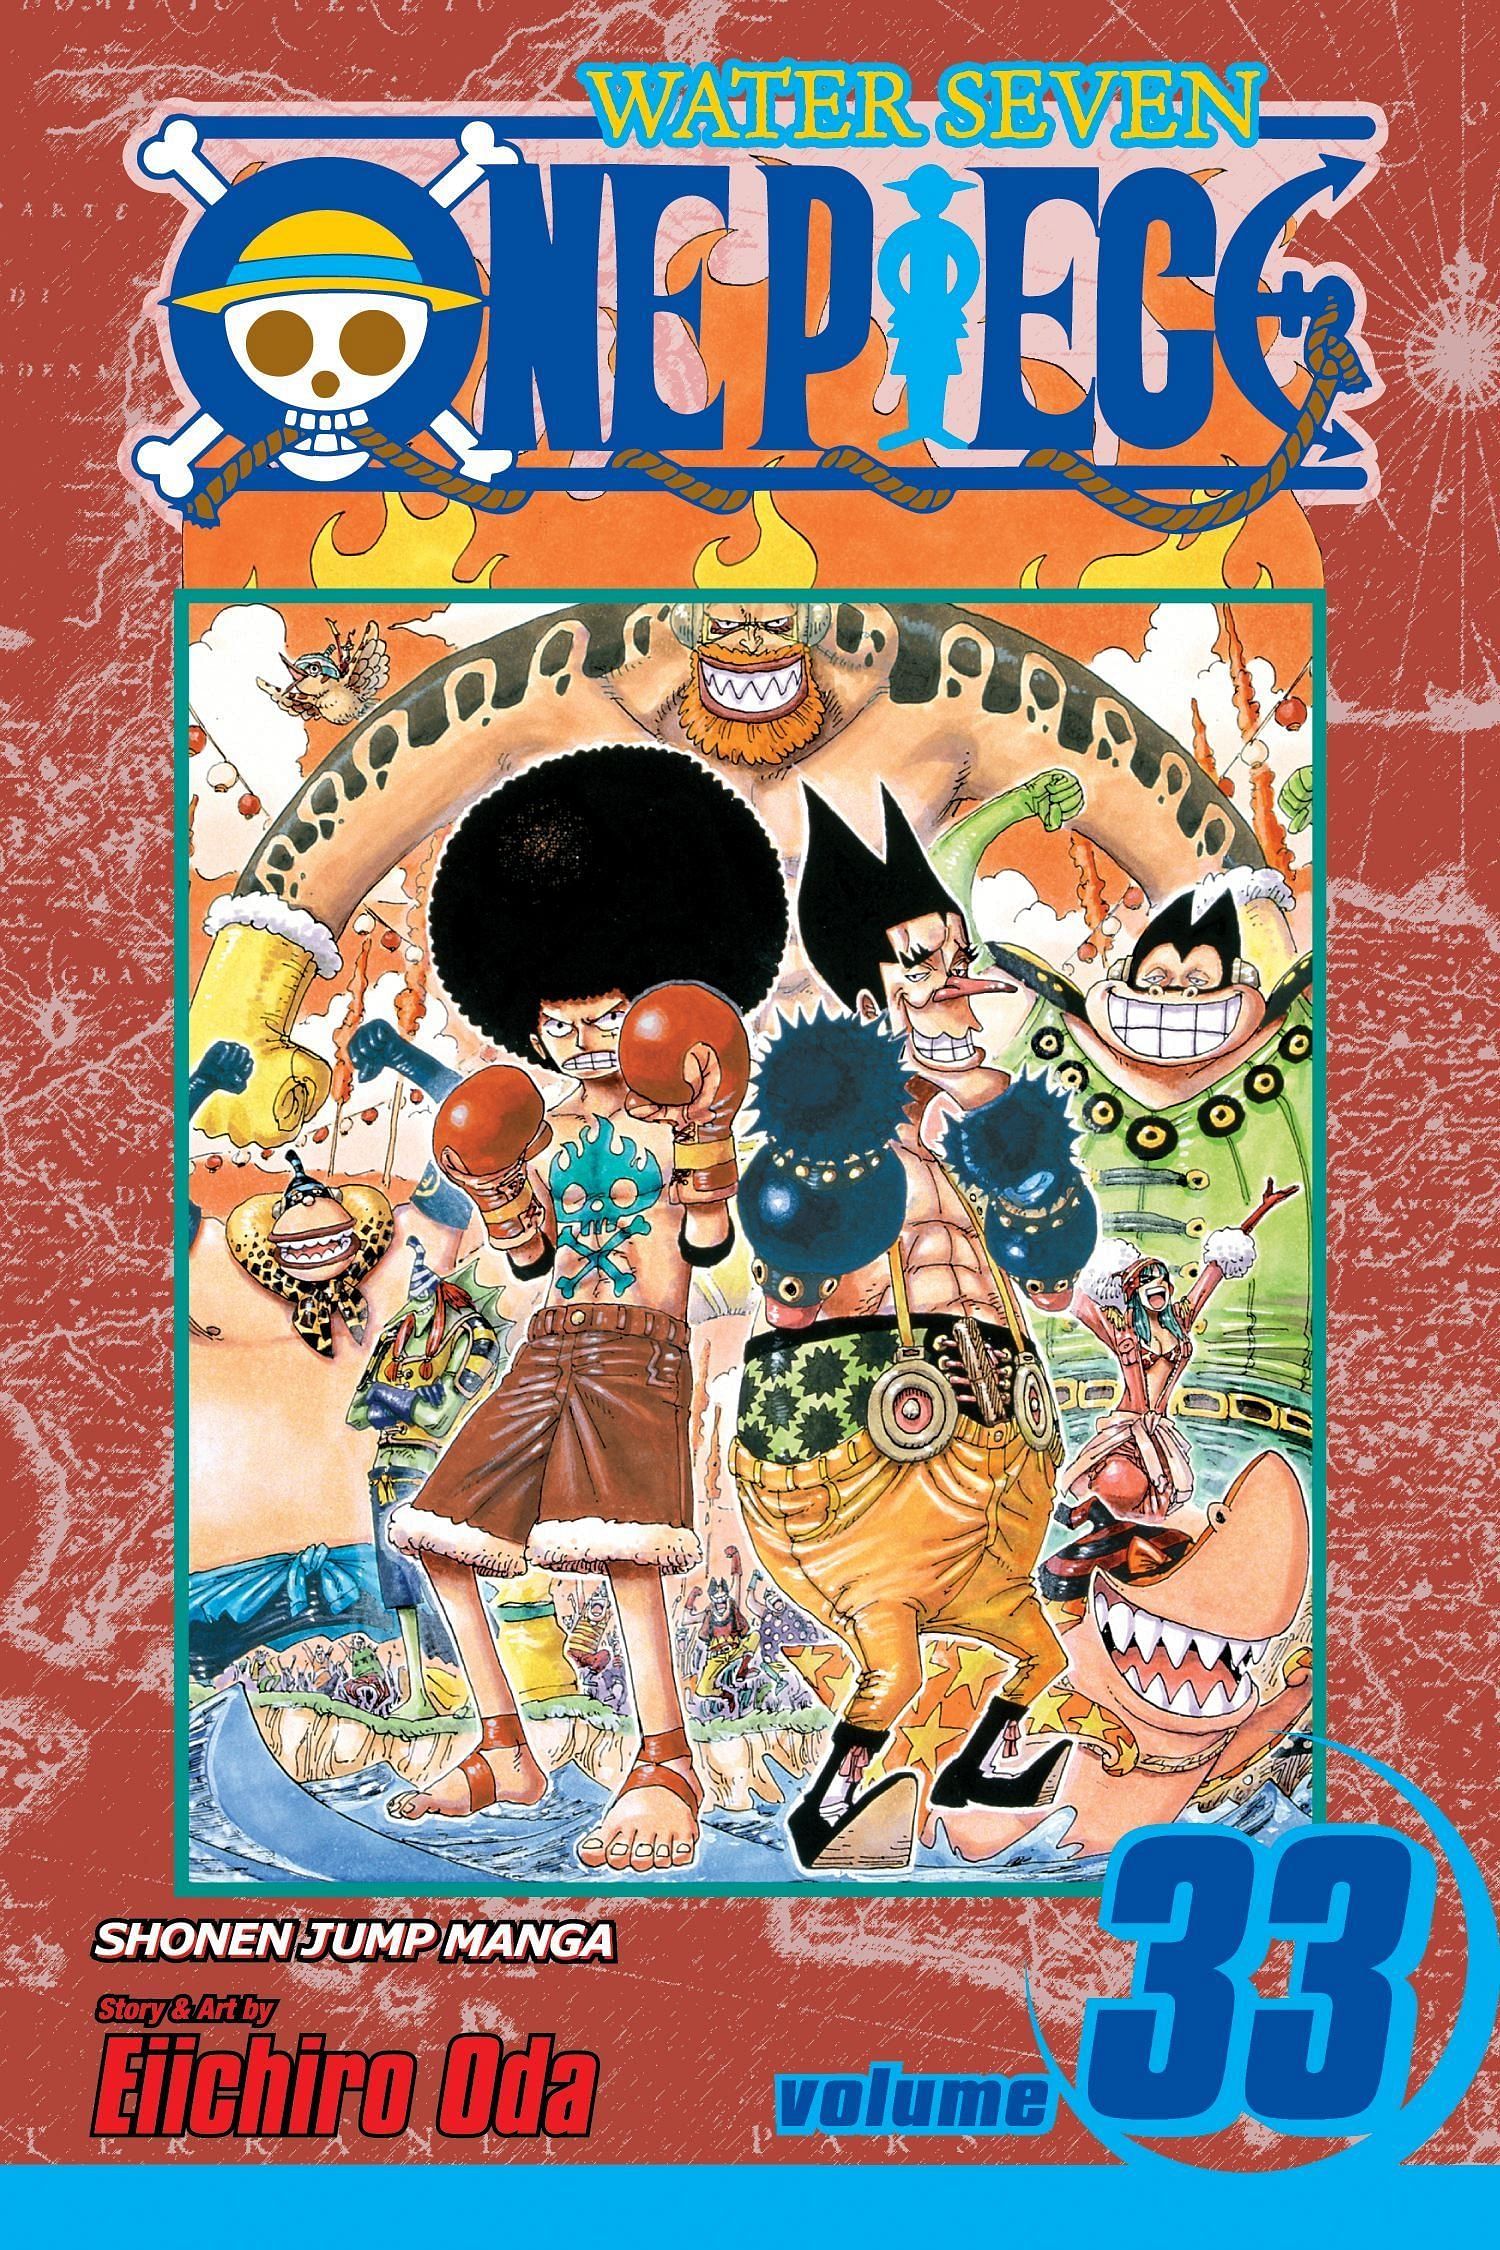 The cover art for One Piece Volume 33 (Image via Shueisha)